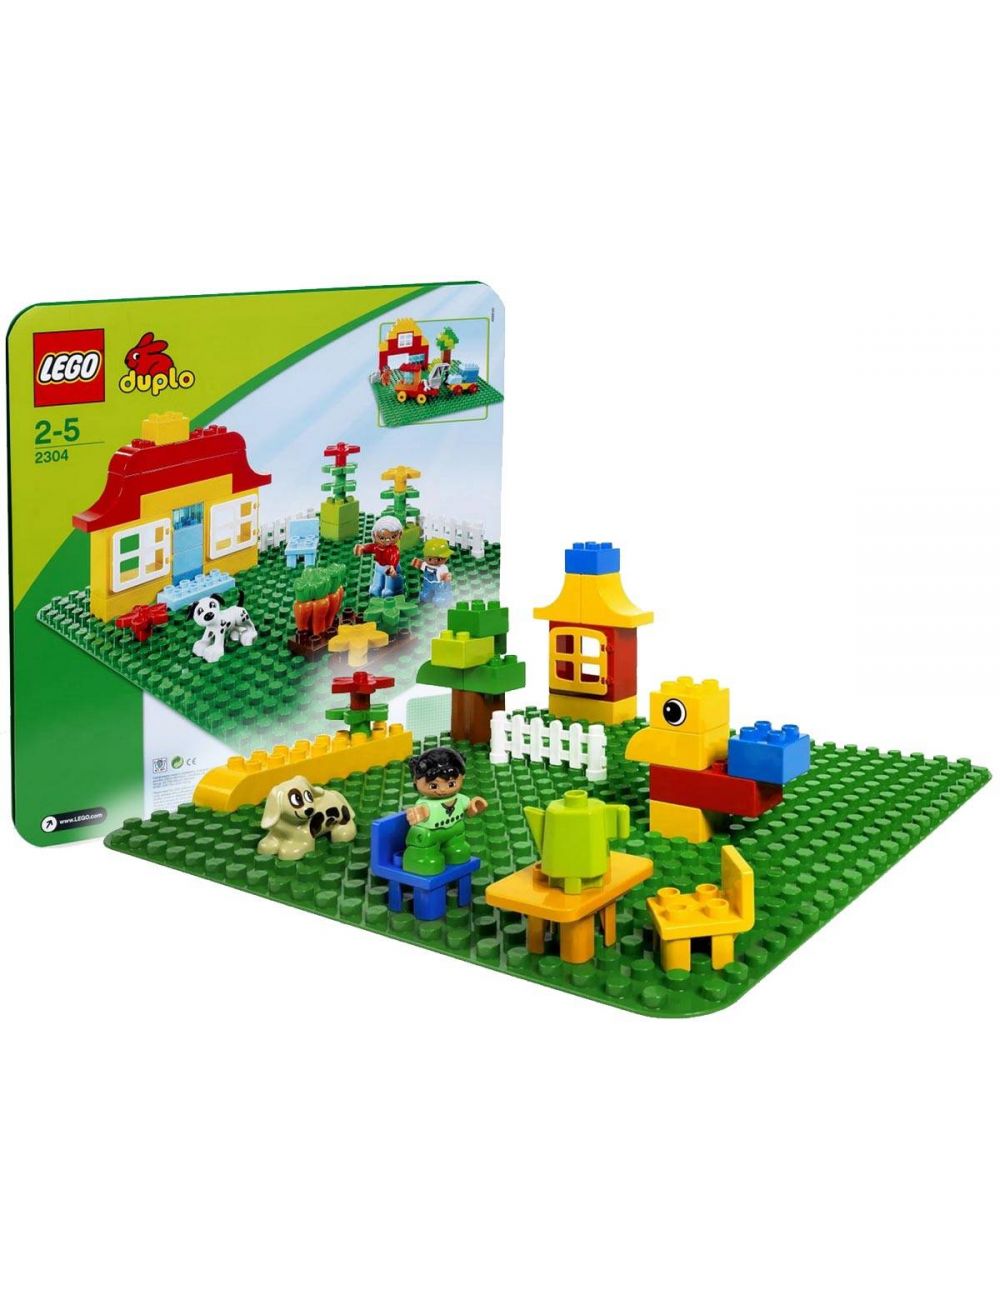 LEGO Duplo Duża Płytka Budowlana Zielona 2304